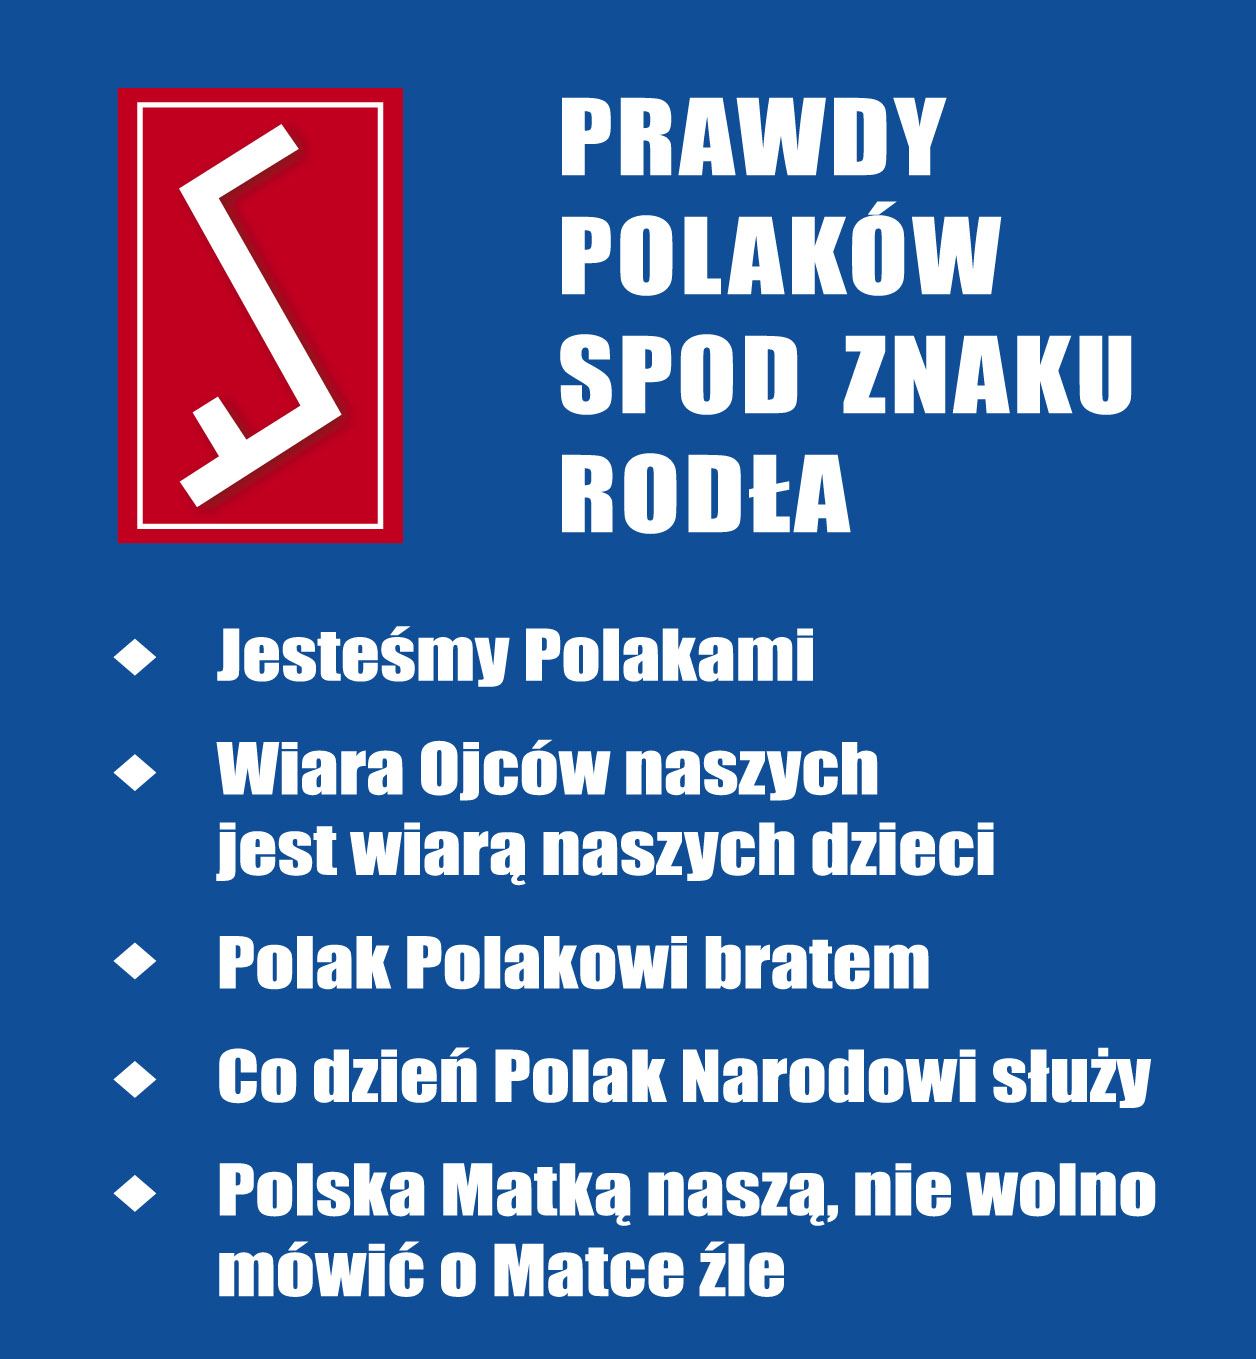 Prawdy Polaków.